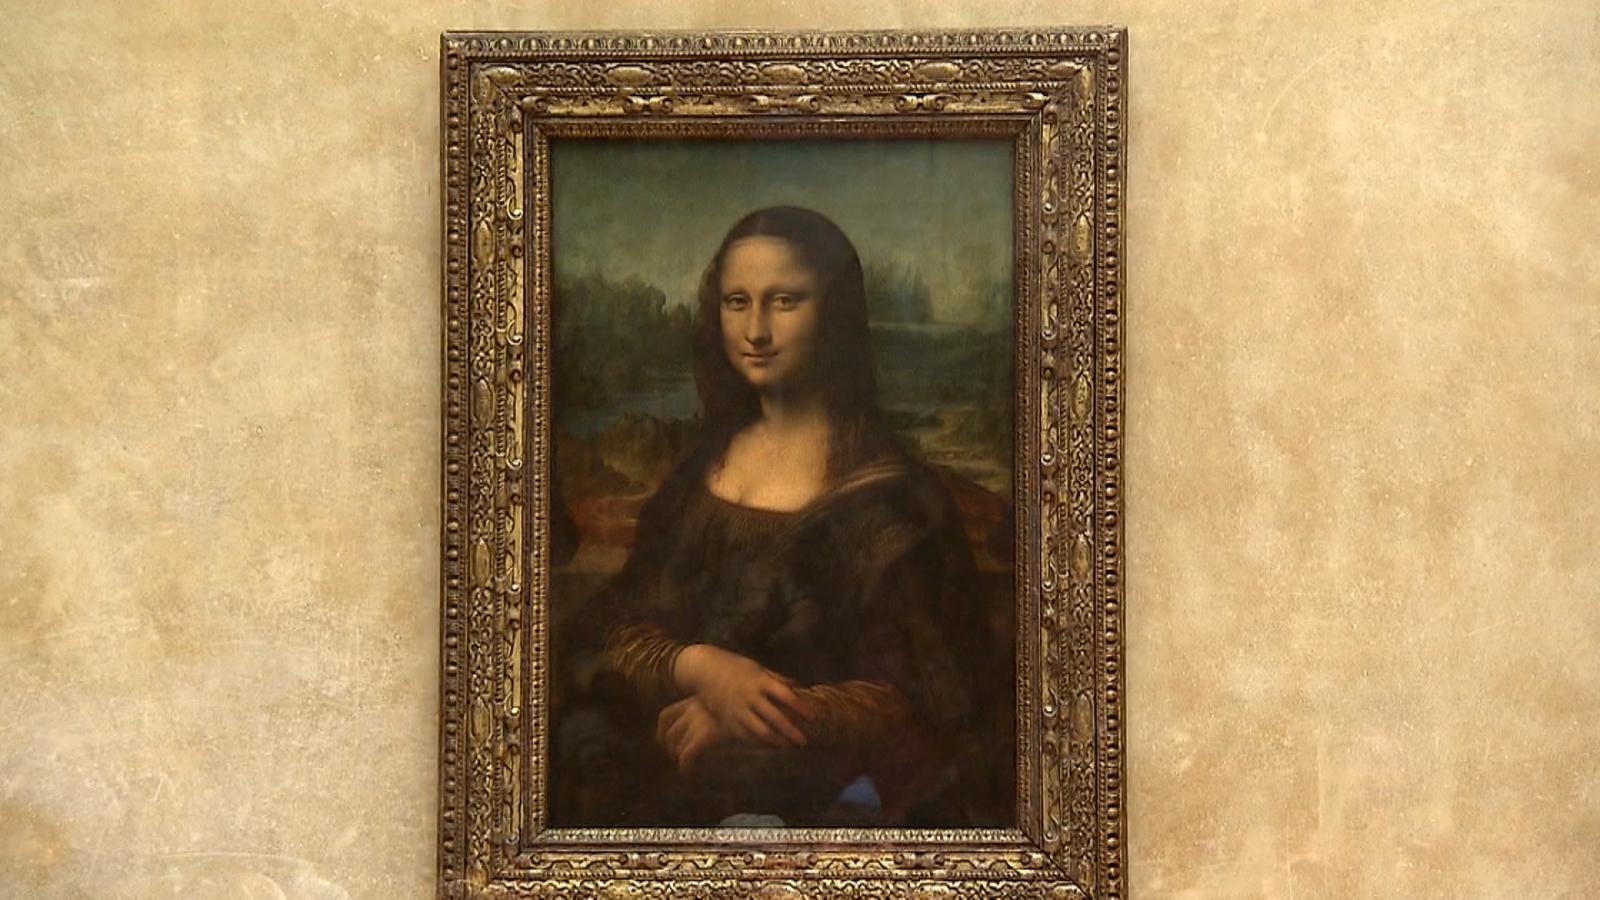 ¿La Mona Lisa rapeando? La nueva Inteligencia Artificial de Microsoft
anima rostros a partir de fotos